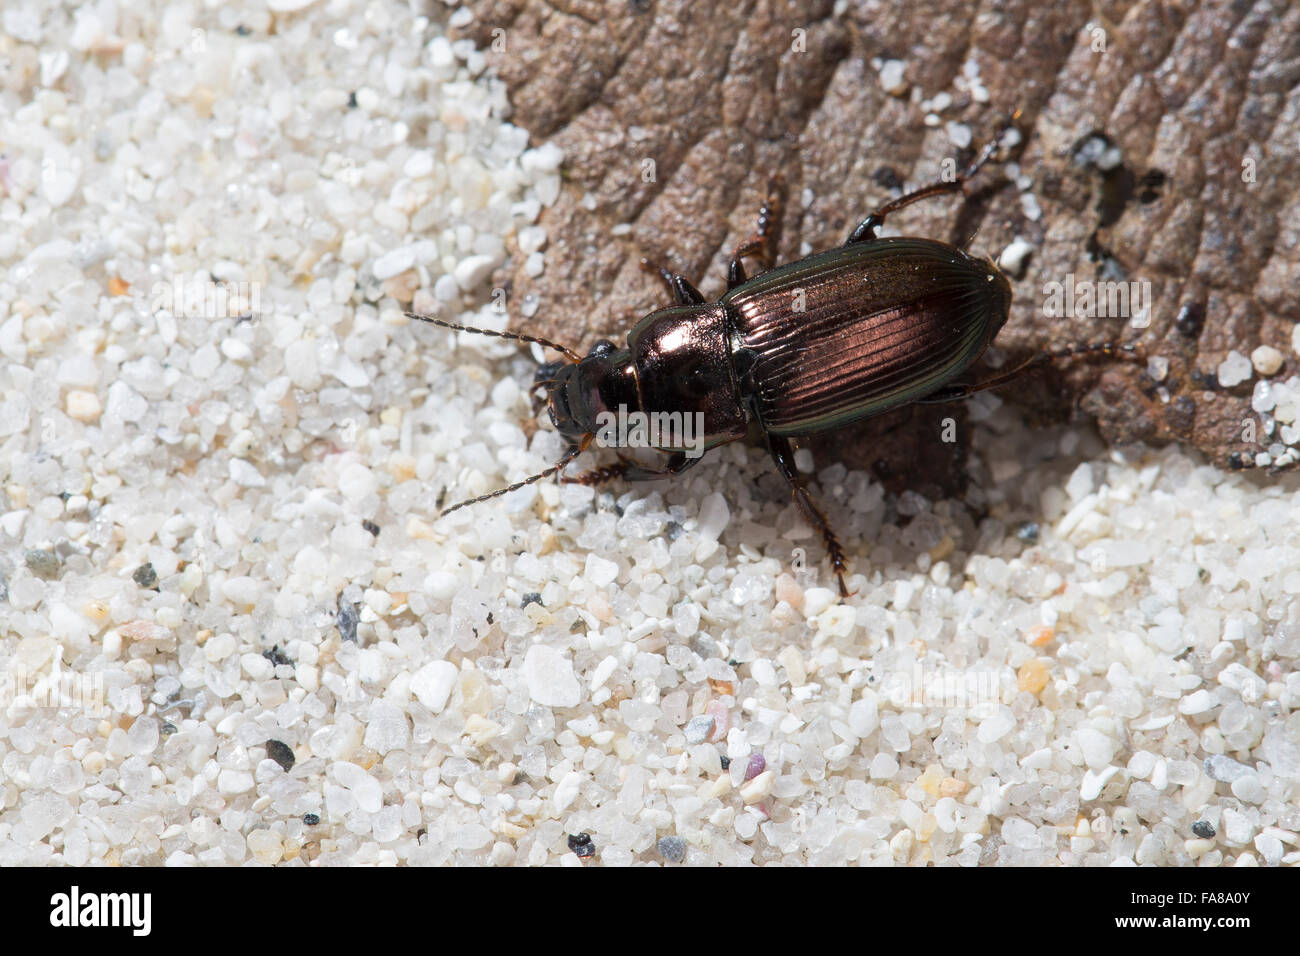 Ground beetle, male, Metallischer Schnellläufer, Metallischer Schnelläufer, Männchen, Harpalus distinguendus Stock Photo